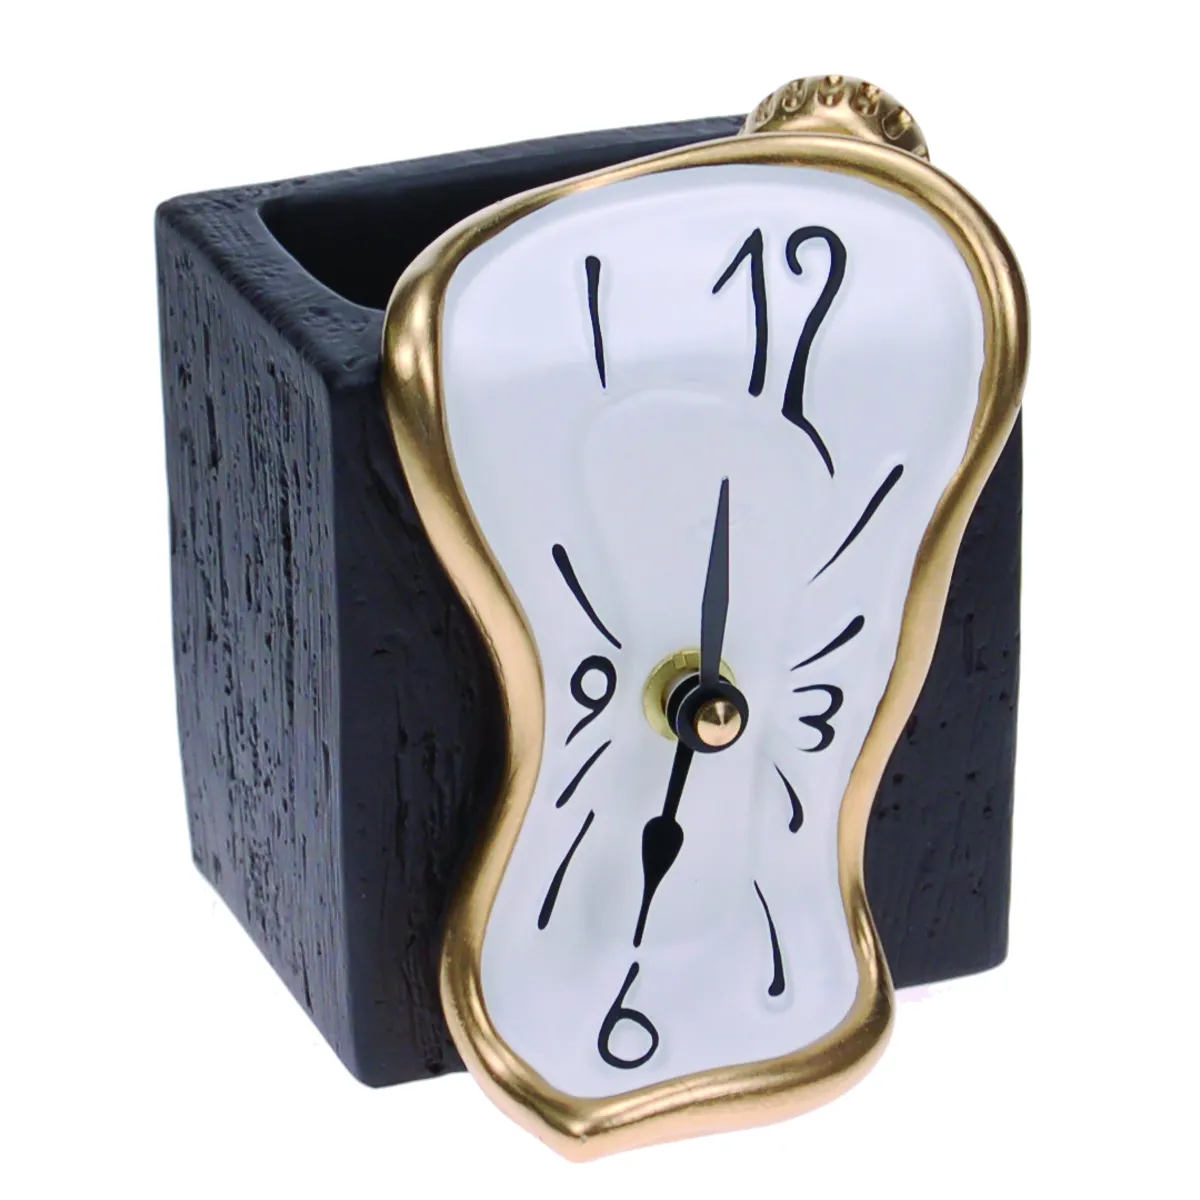 Часы предметов в 5 классе. Antartidee часы. Сувениры предметы часы. Antartidee Italy часы. Часы от итальянского дизайнера.